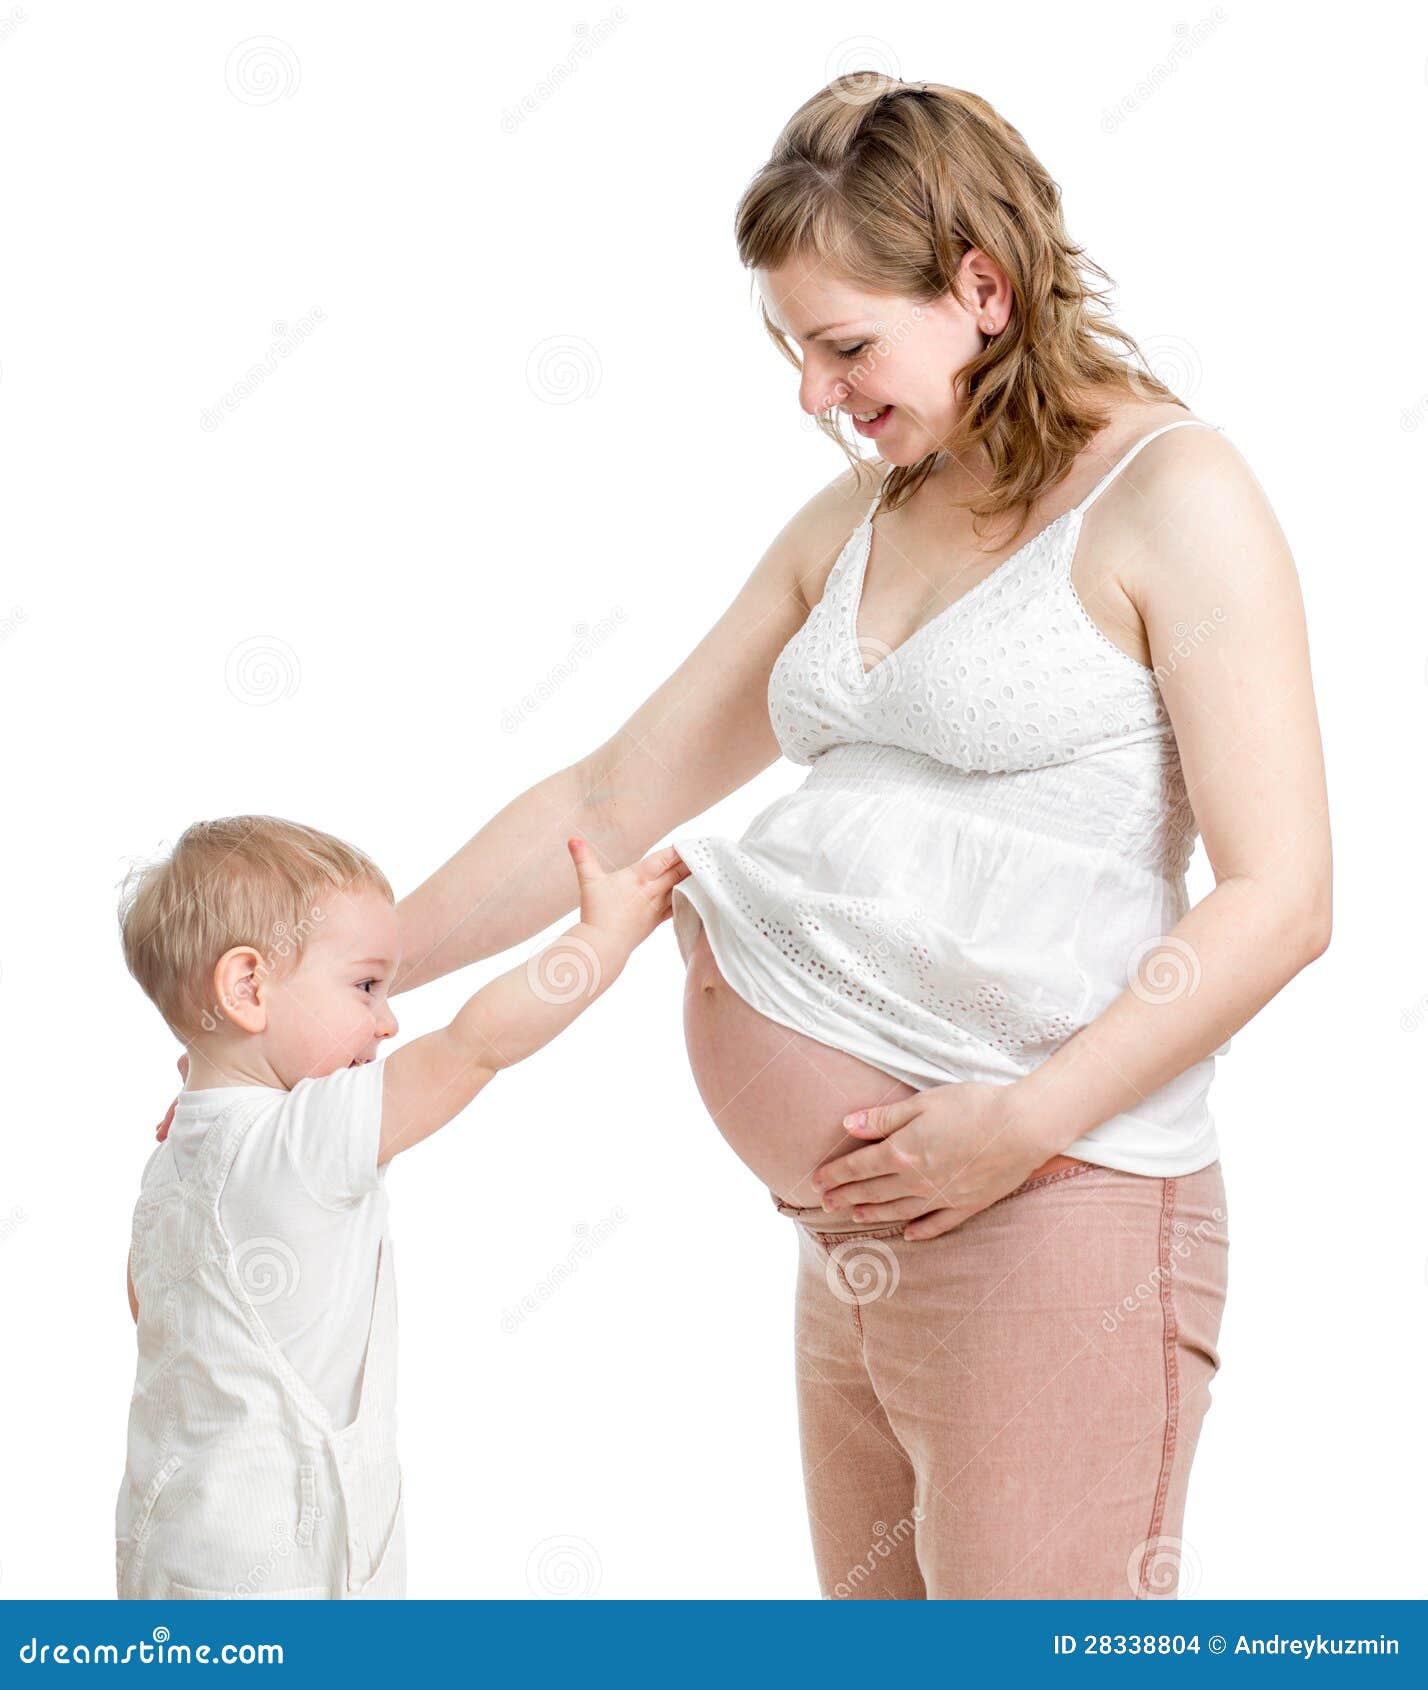 Потрогал киску мамы. Покажи беременных.